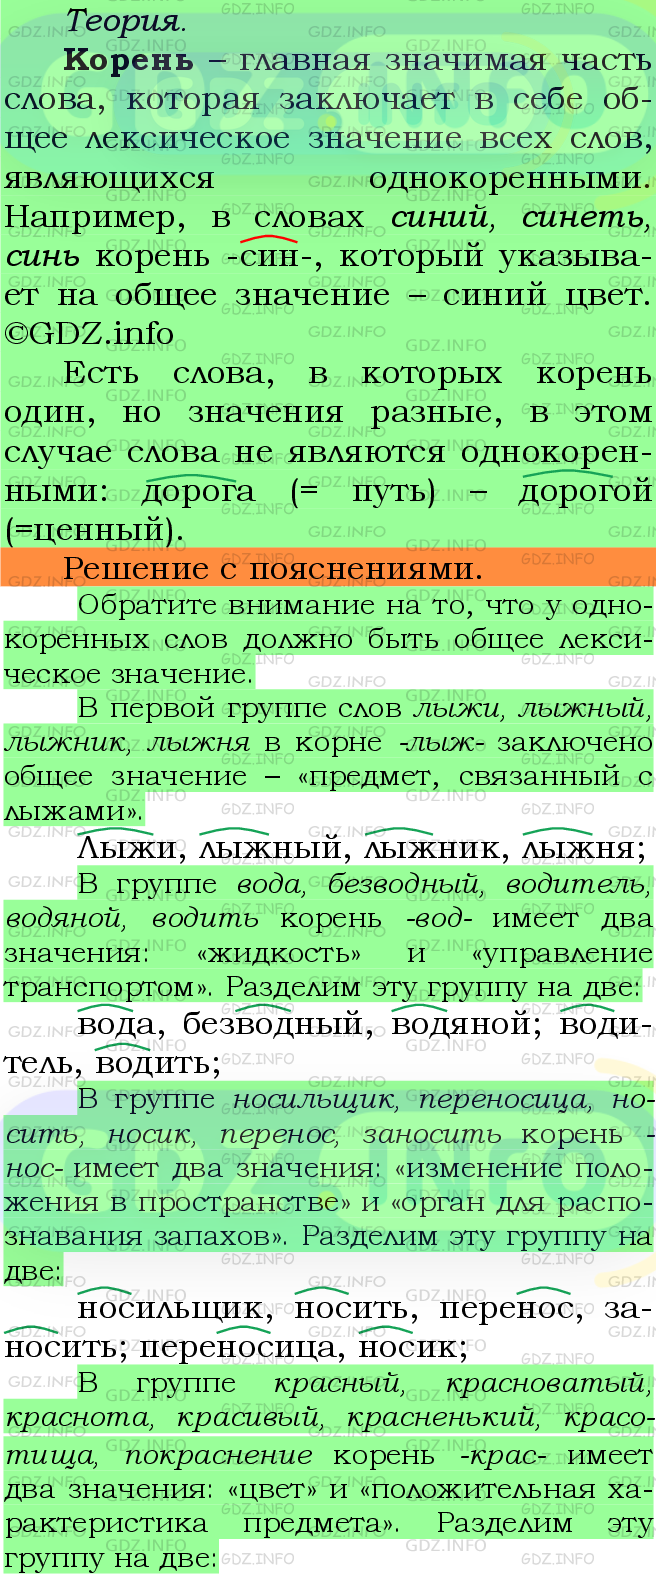 Фото подробного решения: Номер №393 из ГДЗ по Русскому языку 5 класс: Ладыженская Т.А.